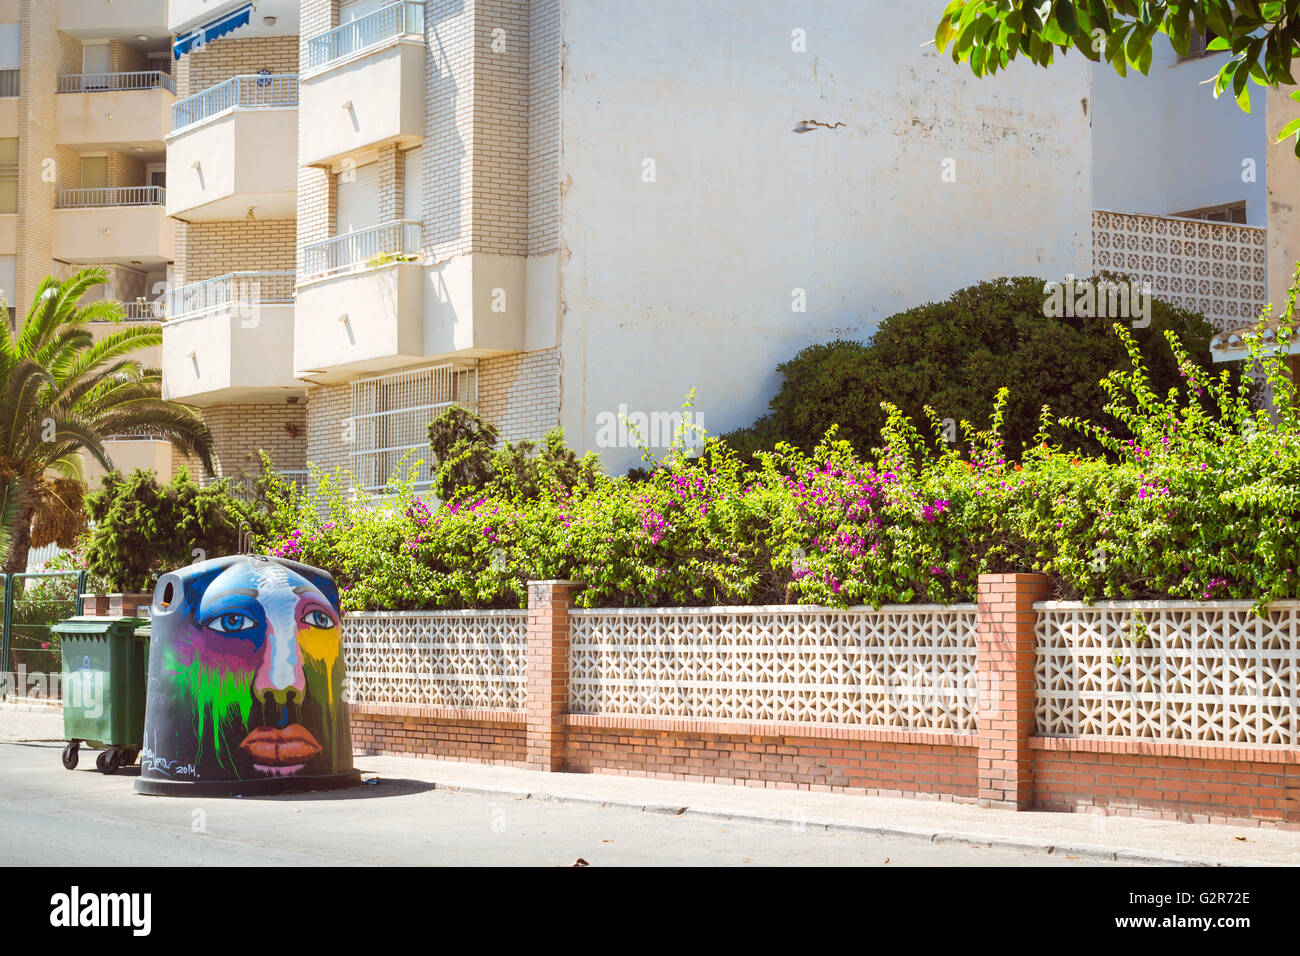 Art-decorated trashcan on sunny street, Streetart graffiti, Av Doctor Mariano Ruiz Canovas, Torrevieja, Valencia, Spain Stock Photo